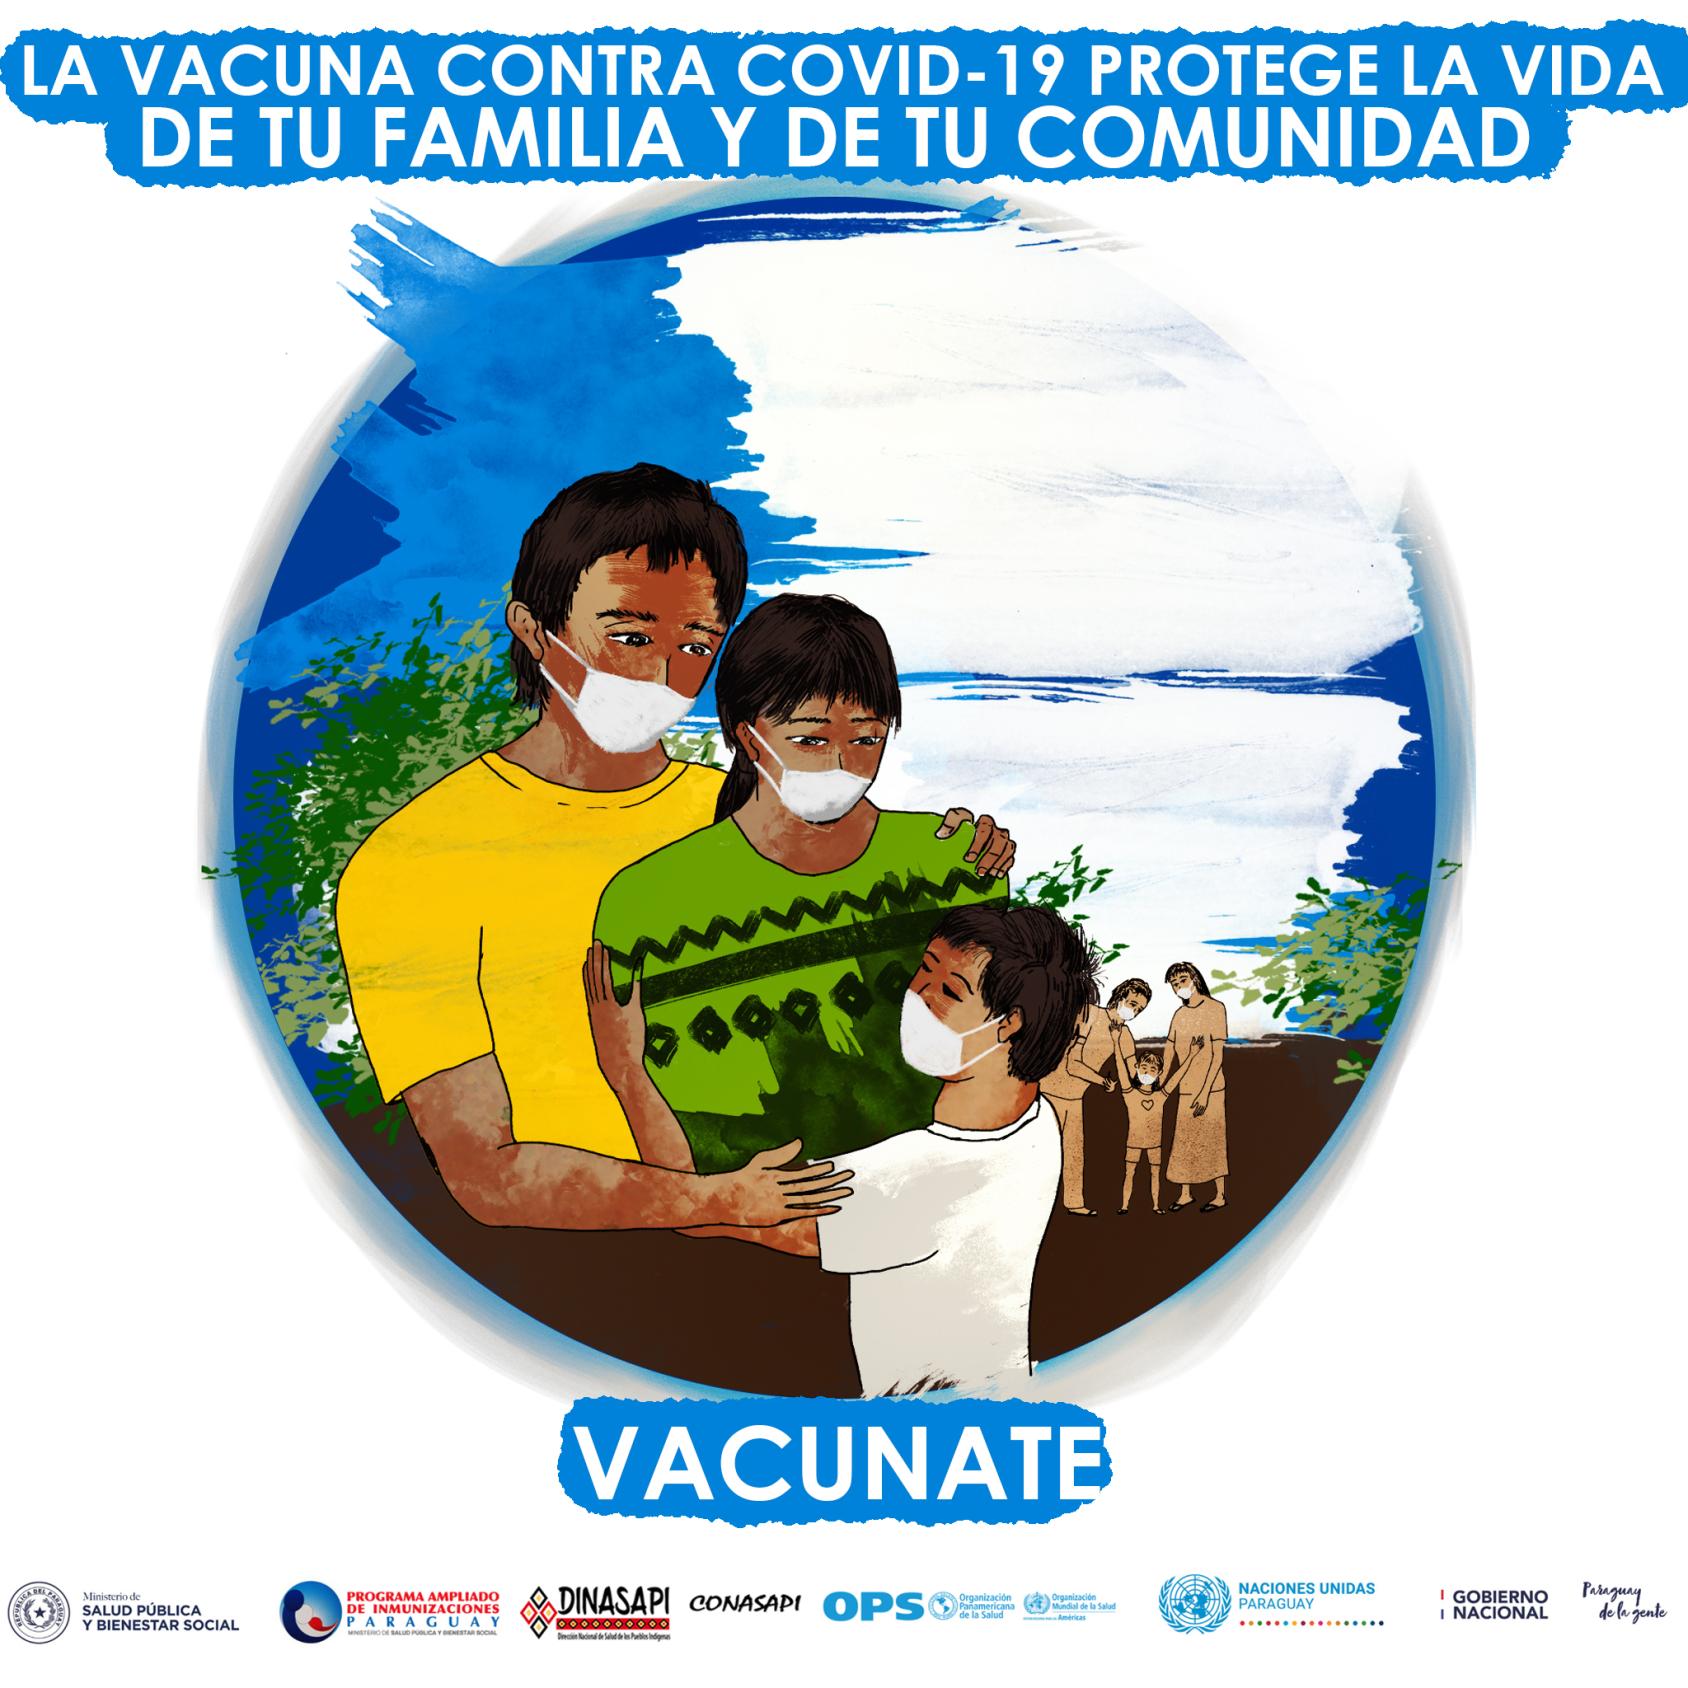 一幅鼓励家庭接种疫苗的漫画。